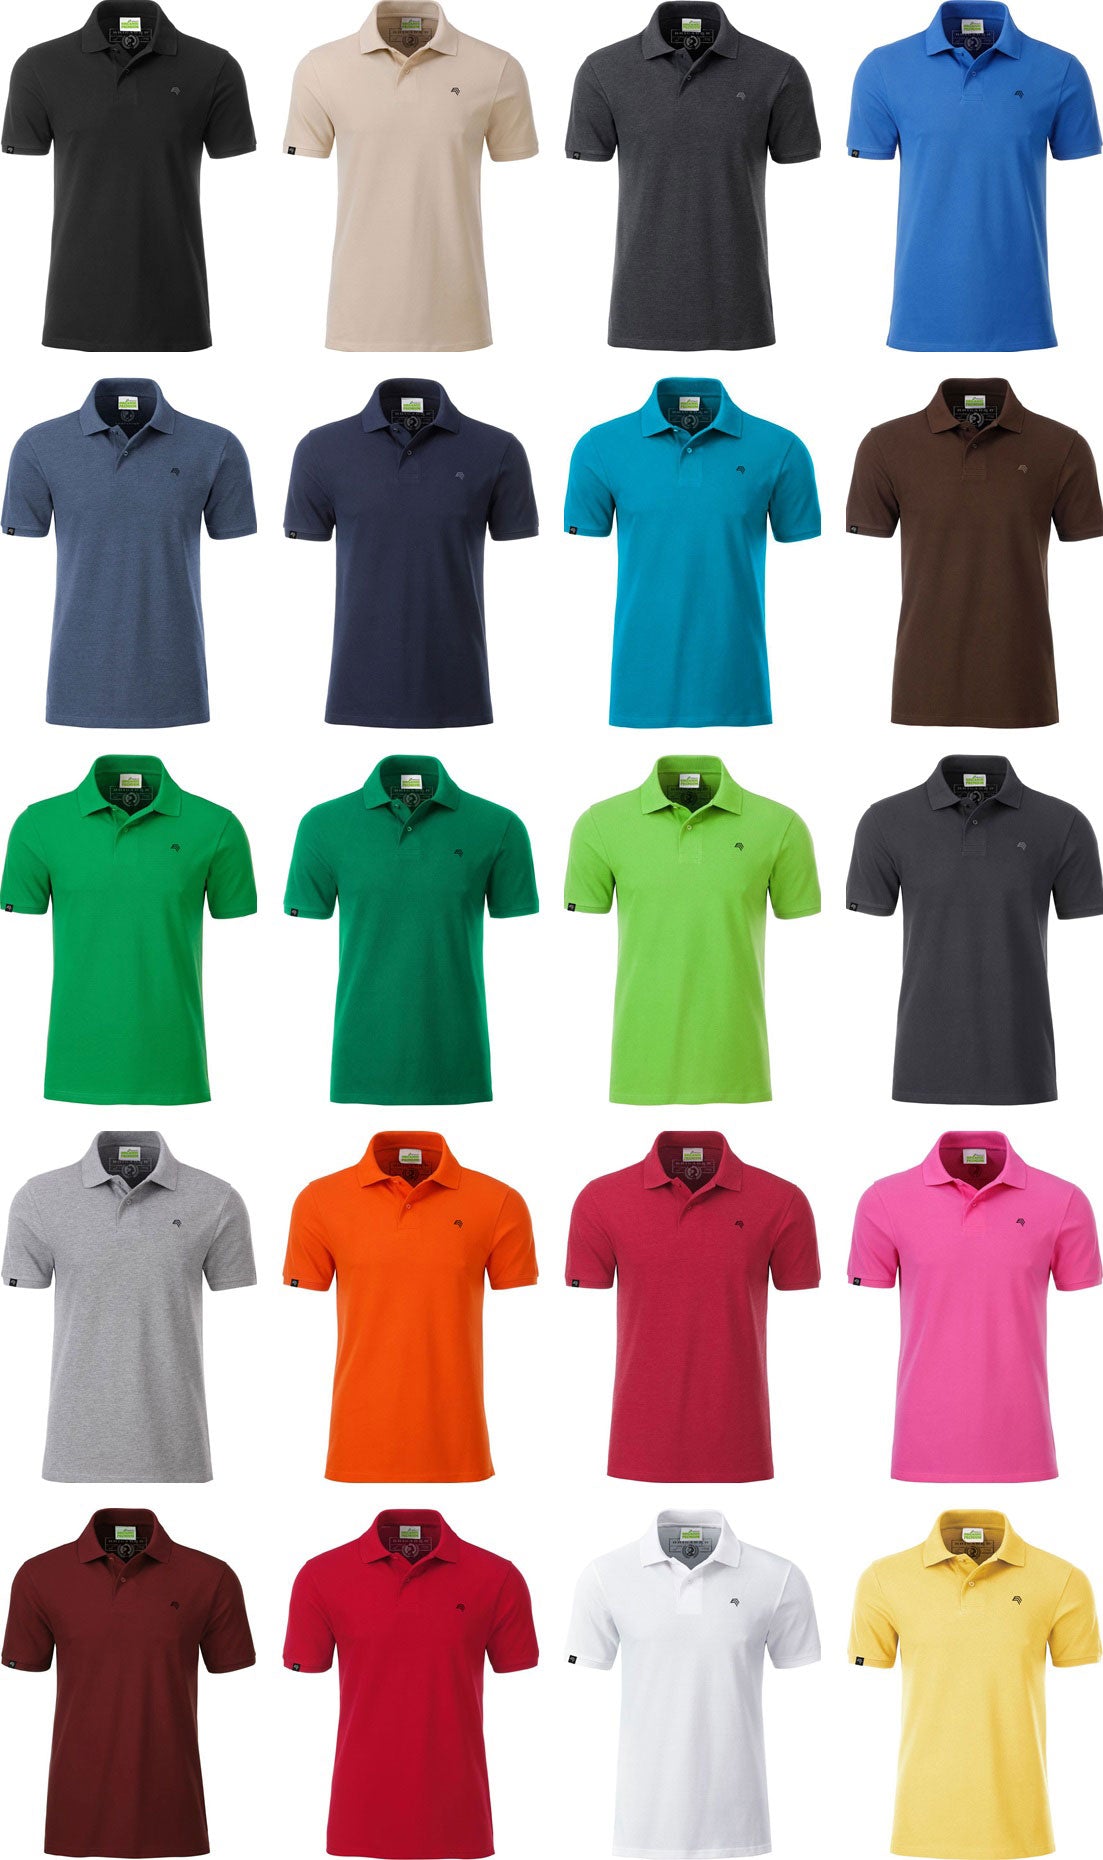 JAN 8010 ― Herren Bio-Baumwolle Polo Shirt - Irish Grün